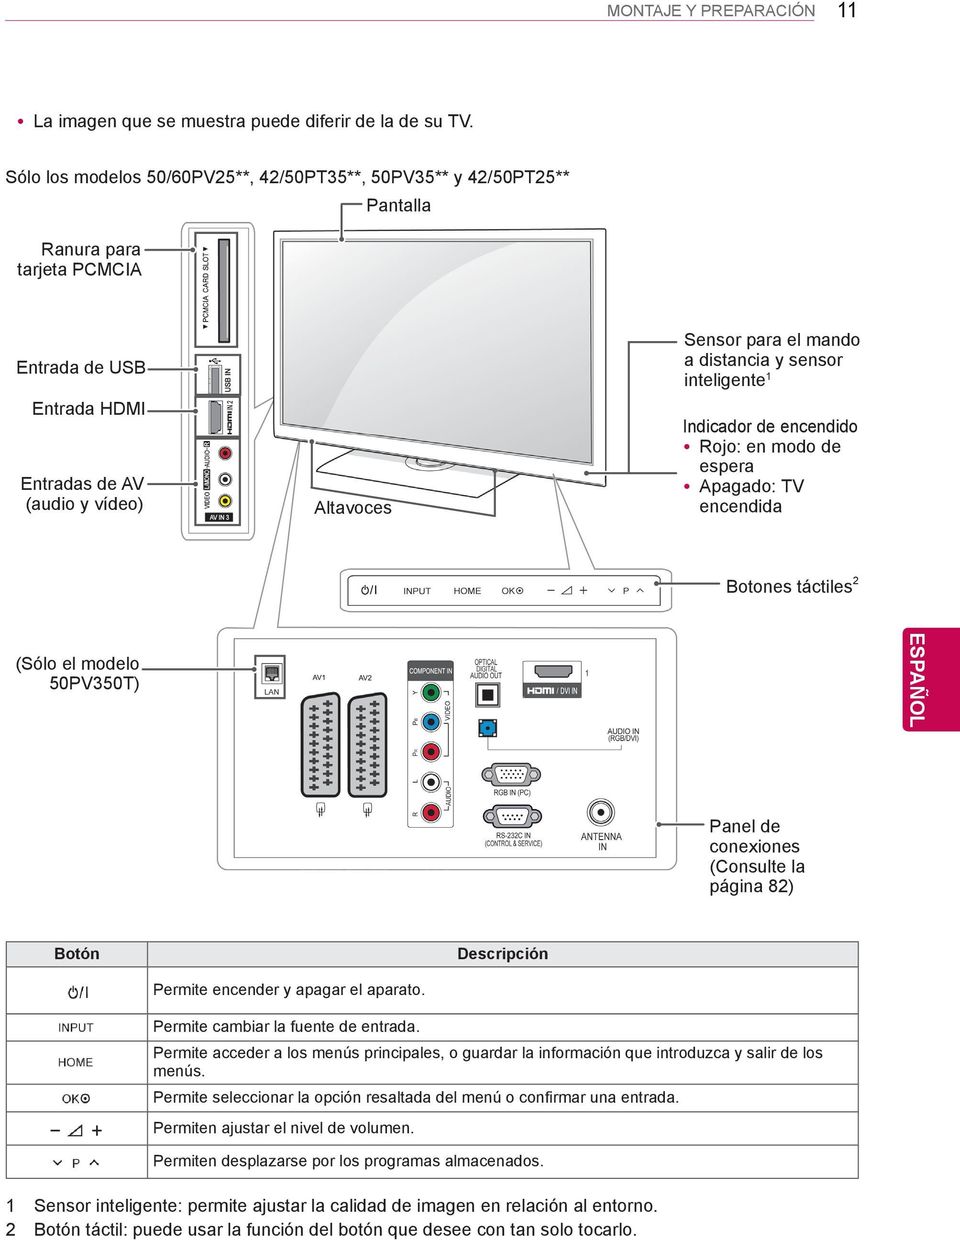 distancia y sensor inteligente 1 Indicador de encendido Rojo: en modo de espera Apagado: TV encendida Botones táctiles 2 (Sólo el modelo 50PV350T) Panel de conexiones (Consulte la página 82) Botón